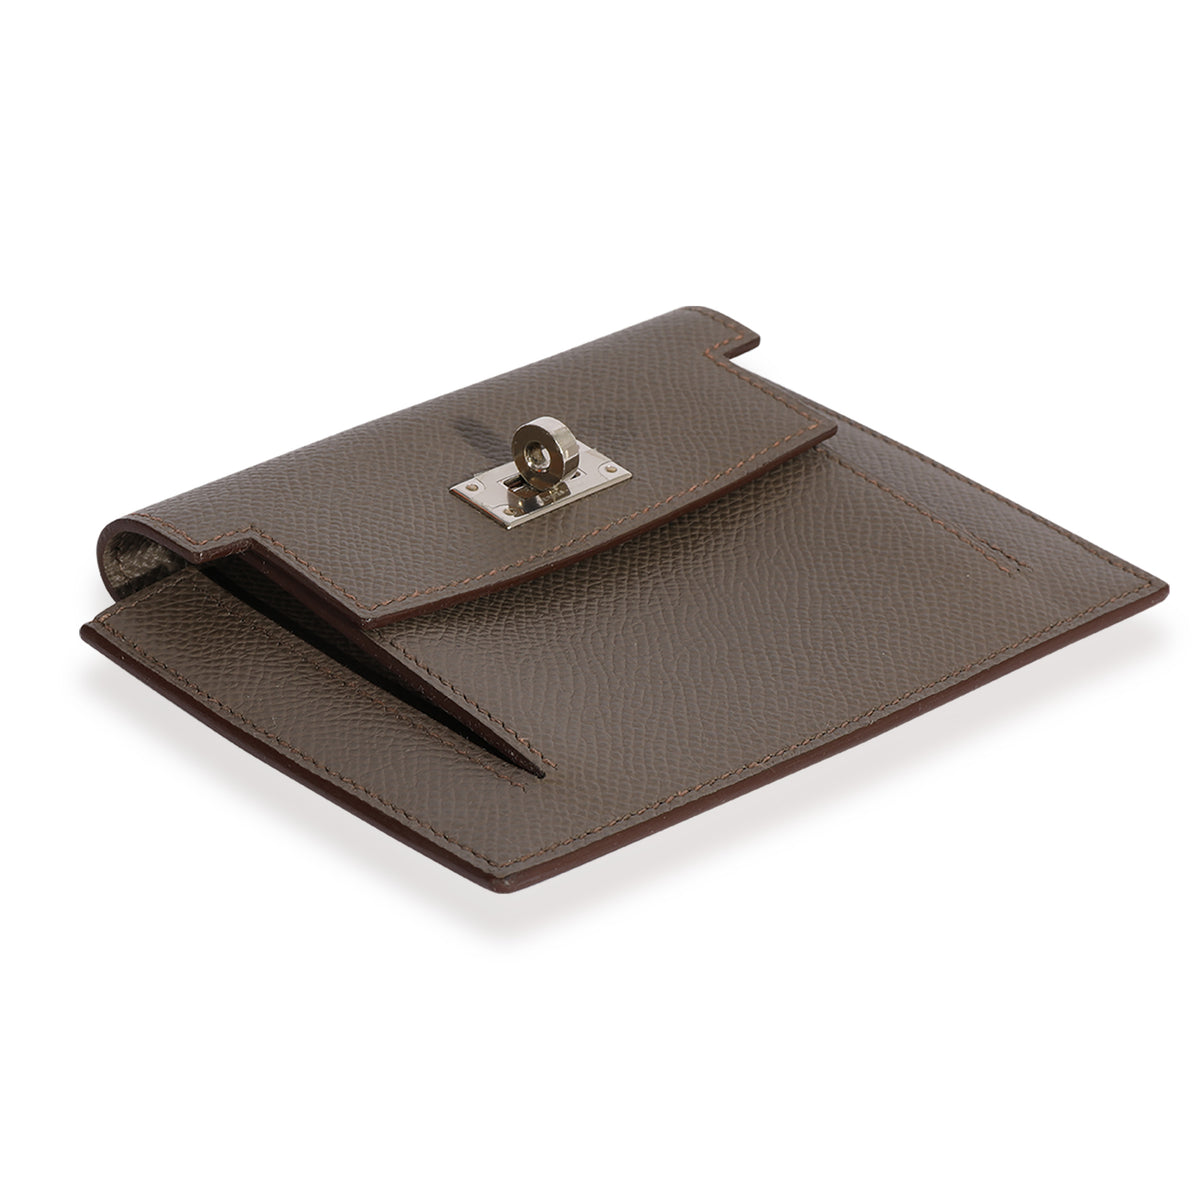 Hermès Etain Epsom Kelly Pocket Compact Wallet, myGemma